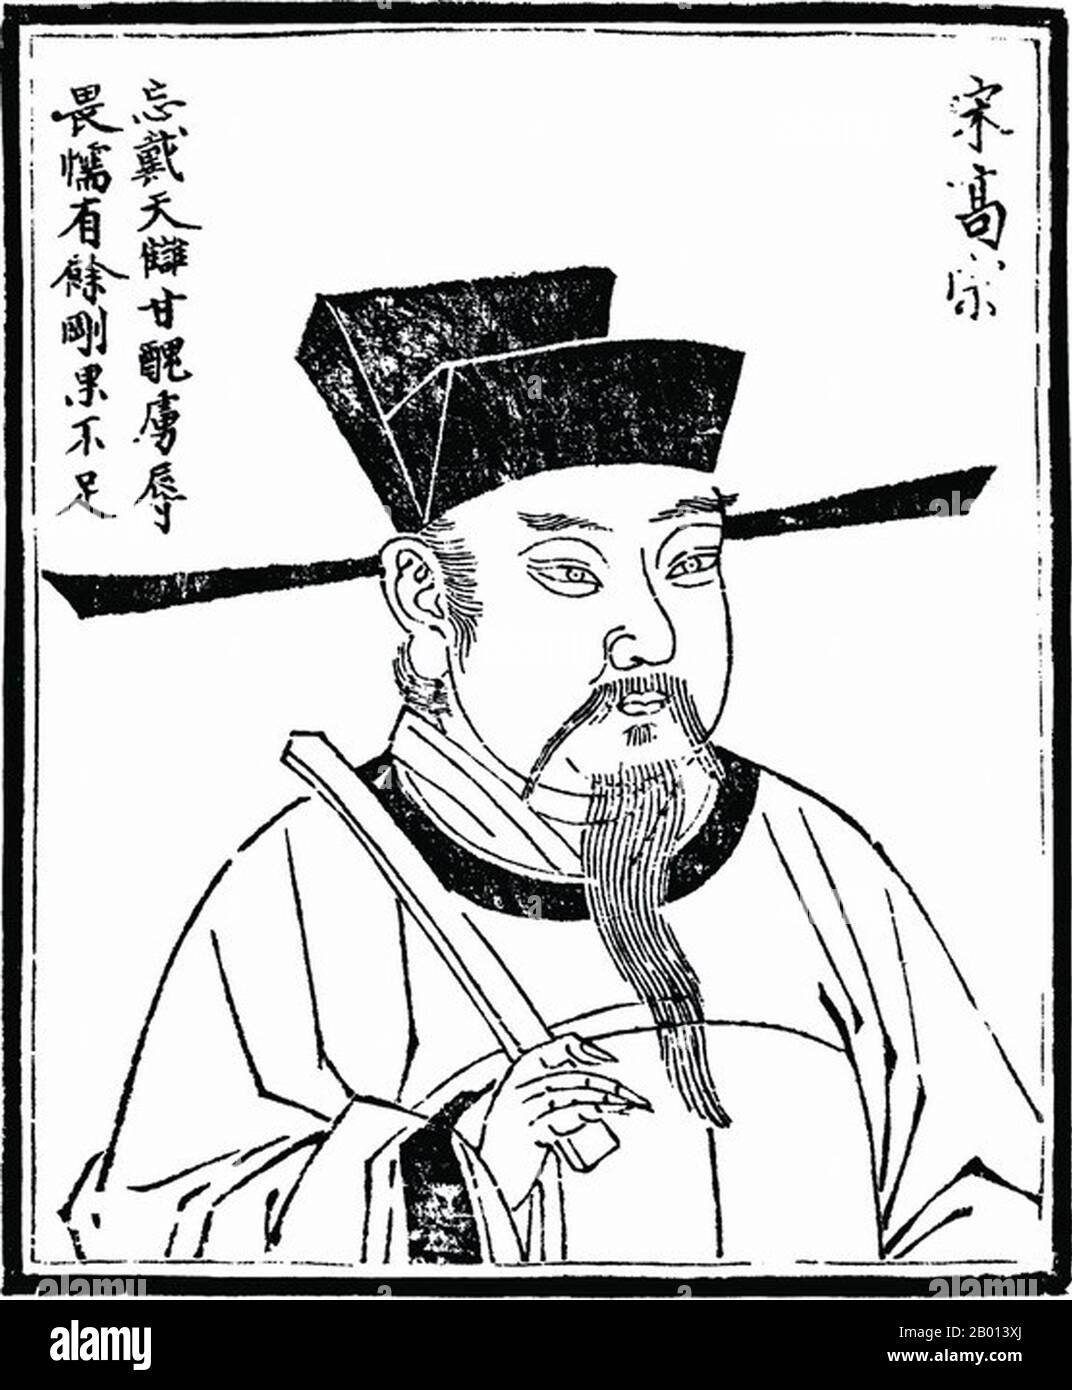 China: Kaiser Gaozong (12. Juni 1107 - 9. November 1187), 10. Herrscher der Song-Dynastie (r. 1127-1129) und 1. Herrscher der südlichen Song-Dynastie (r. 1129-1162). Abbildung, c. 18. Jahrhundert. Gaozong, persönlicher Name Zhao Gou und Höflichkeitsname Deji, war der zehnte Kaiser der Nördlichen Song Dynastie. Nachdem die Kaiser Qinzong und Huizong von den Jurchen erobert wurden, wurde er Kaiser und gründete das Südliche Song-Reich in Lin'an (modernes Hangzhou). Während seiner Herrschaft griff Jurchens oft das Südliche Song-Reich an. Stockfoto